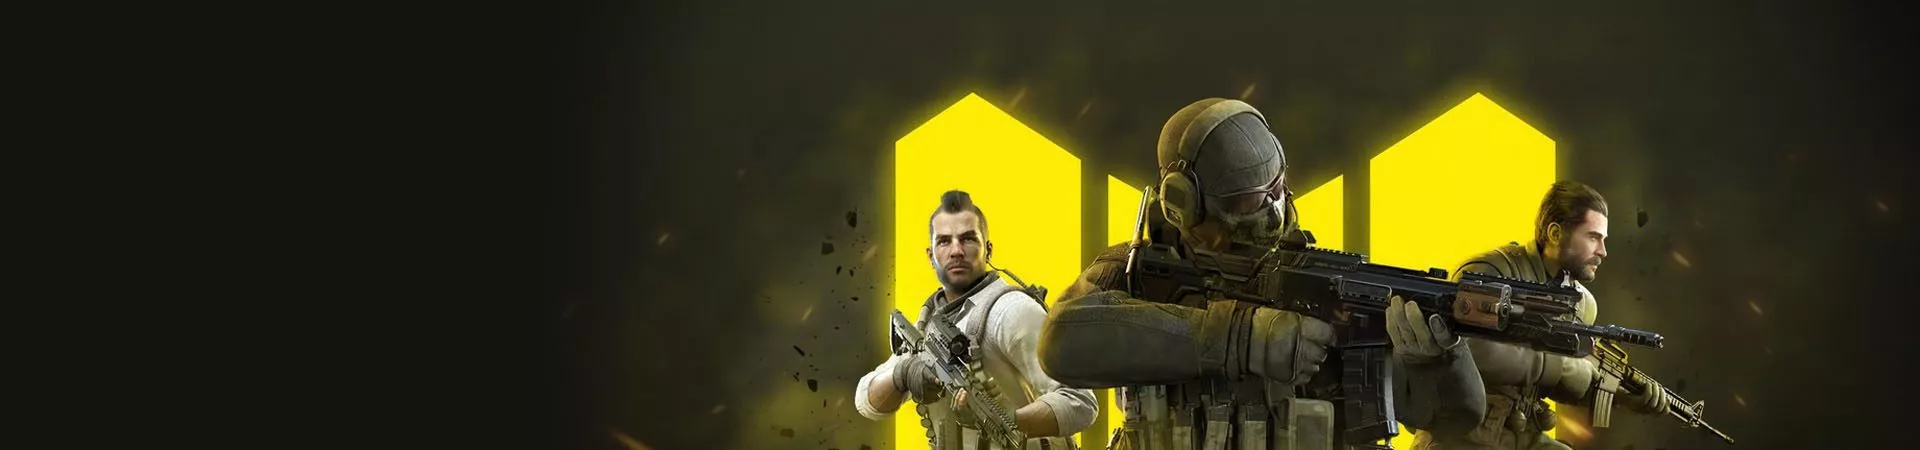 Call of Duty Mobile Season 1: Reawakening, der Inhalt des Updates banner